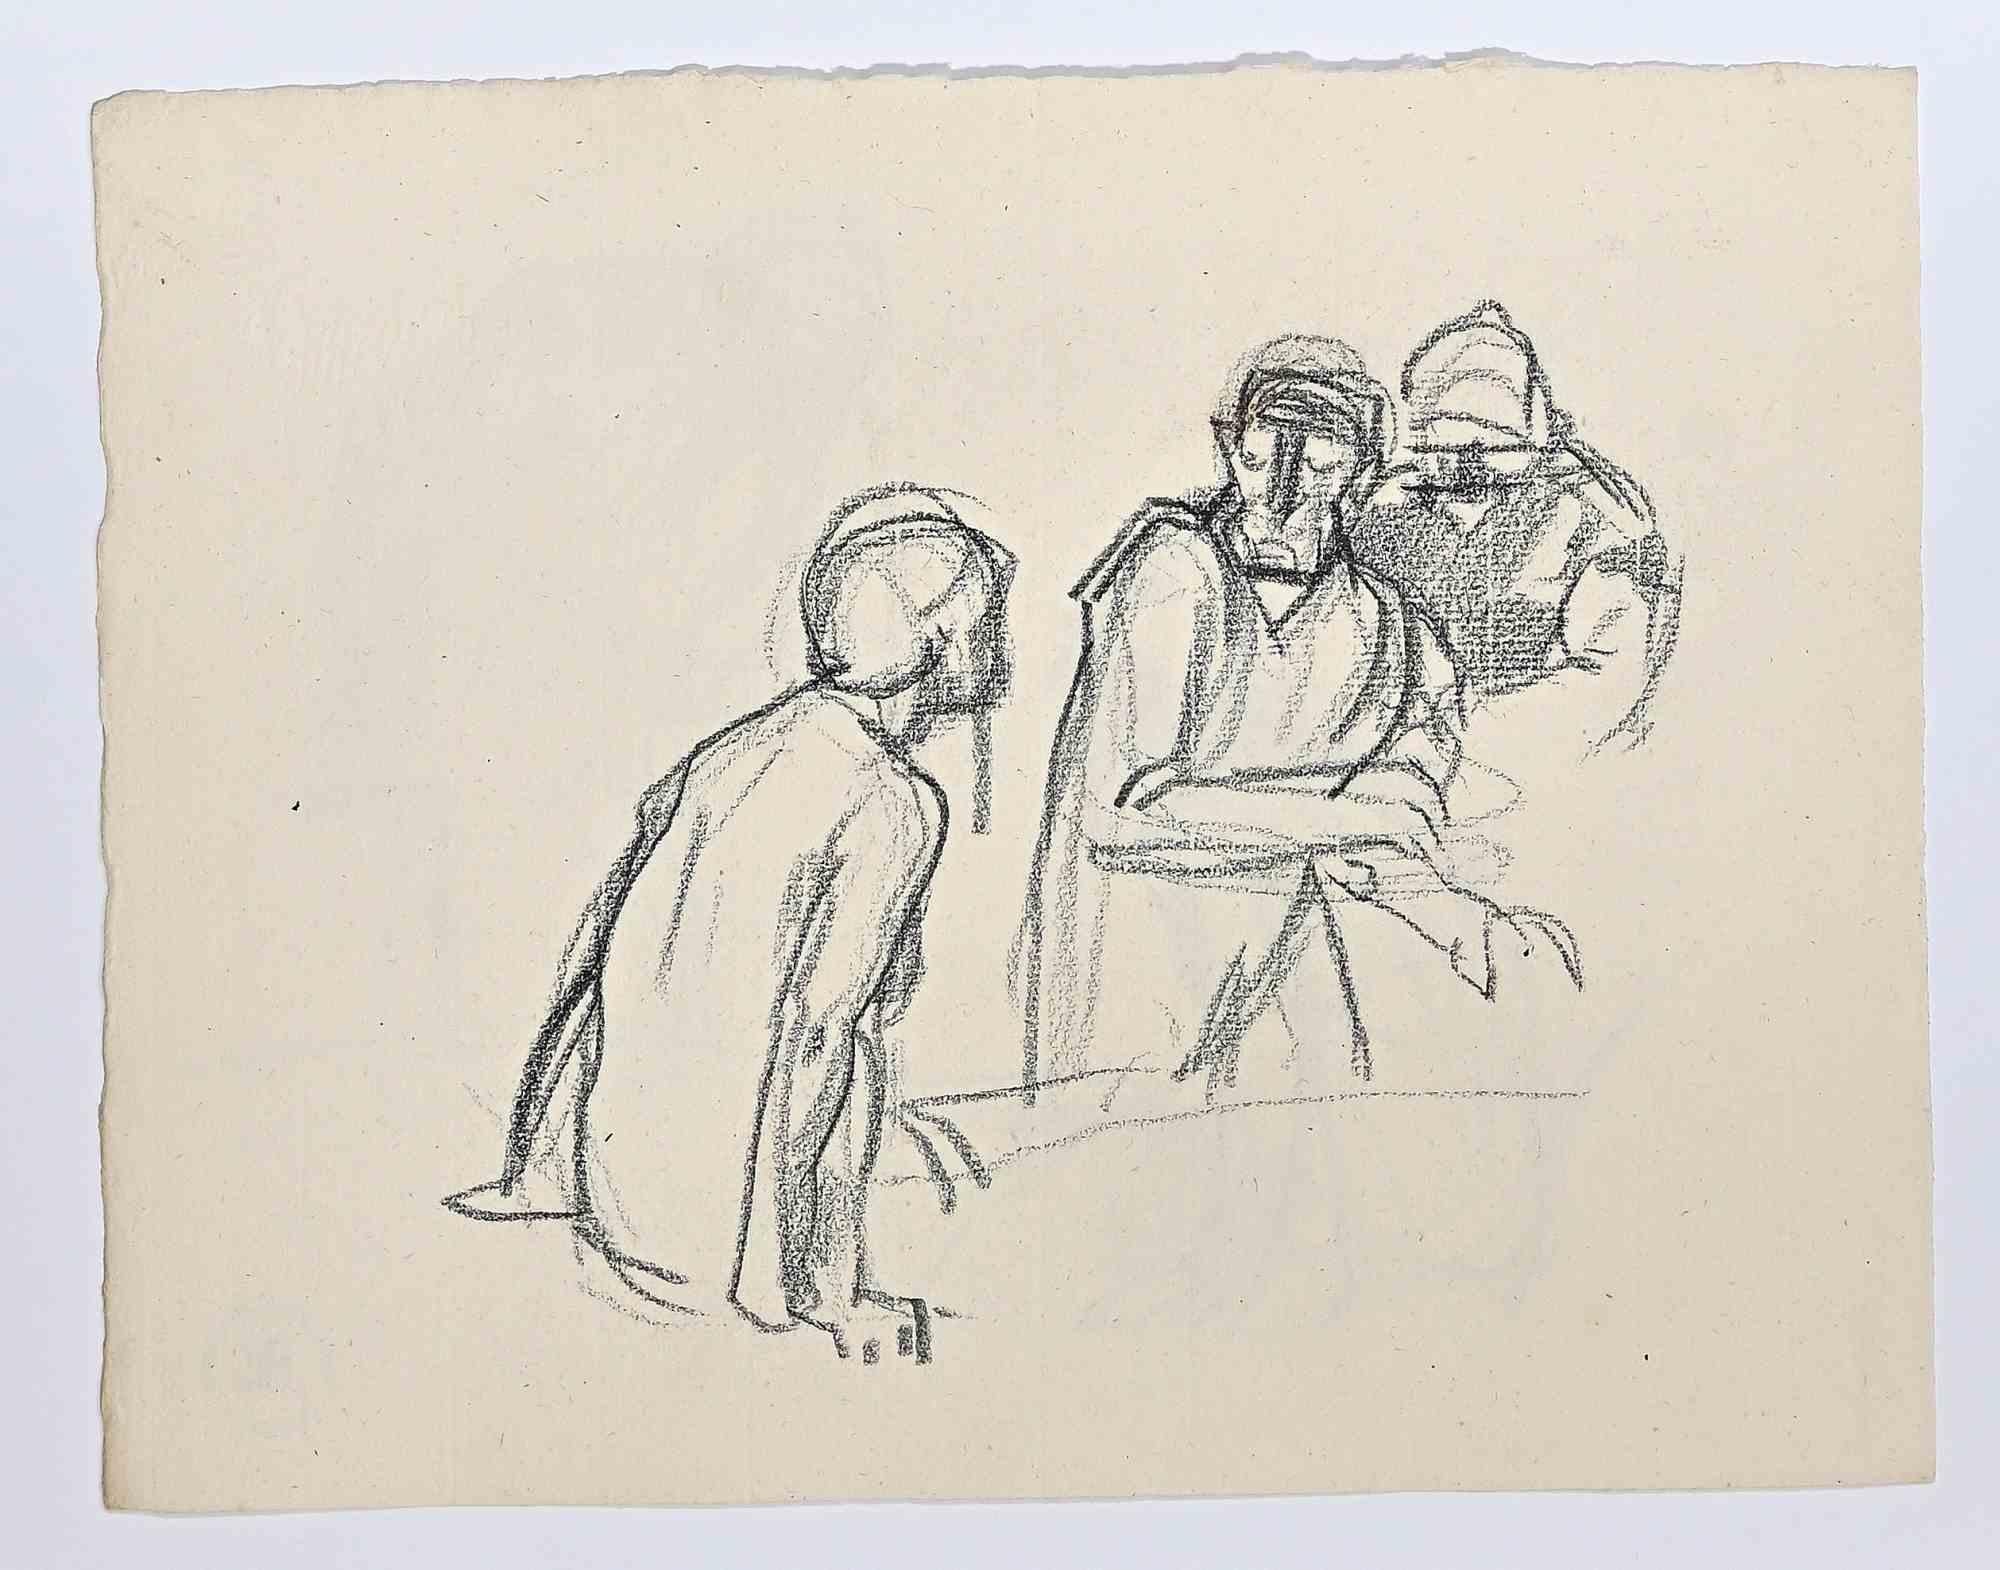 Les Hommes ist eine Kohlezeichnung von Hermann Paul.

Auf der Rückseite eine weitere Zeichnung. Passpartout enthalten cm 35x51

Guter Zustand.

René Georges Hermann-Paul (27. Dezember 1864 - 23. Juni 1940) war ein französischer Künstler. Er wurde in